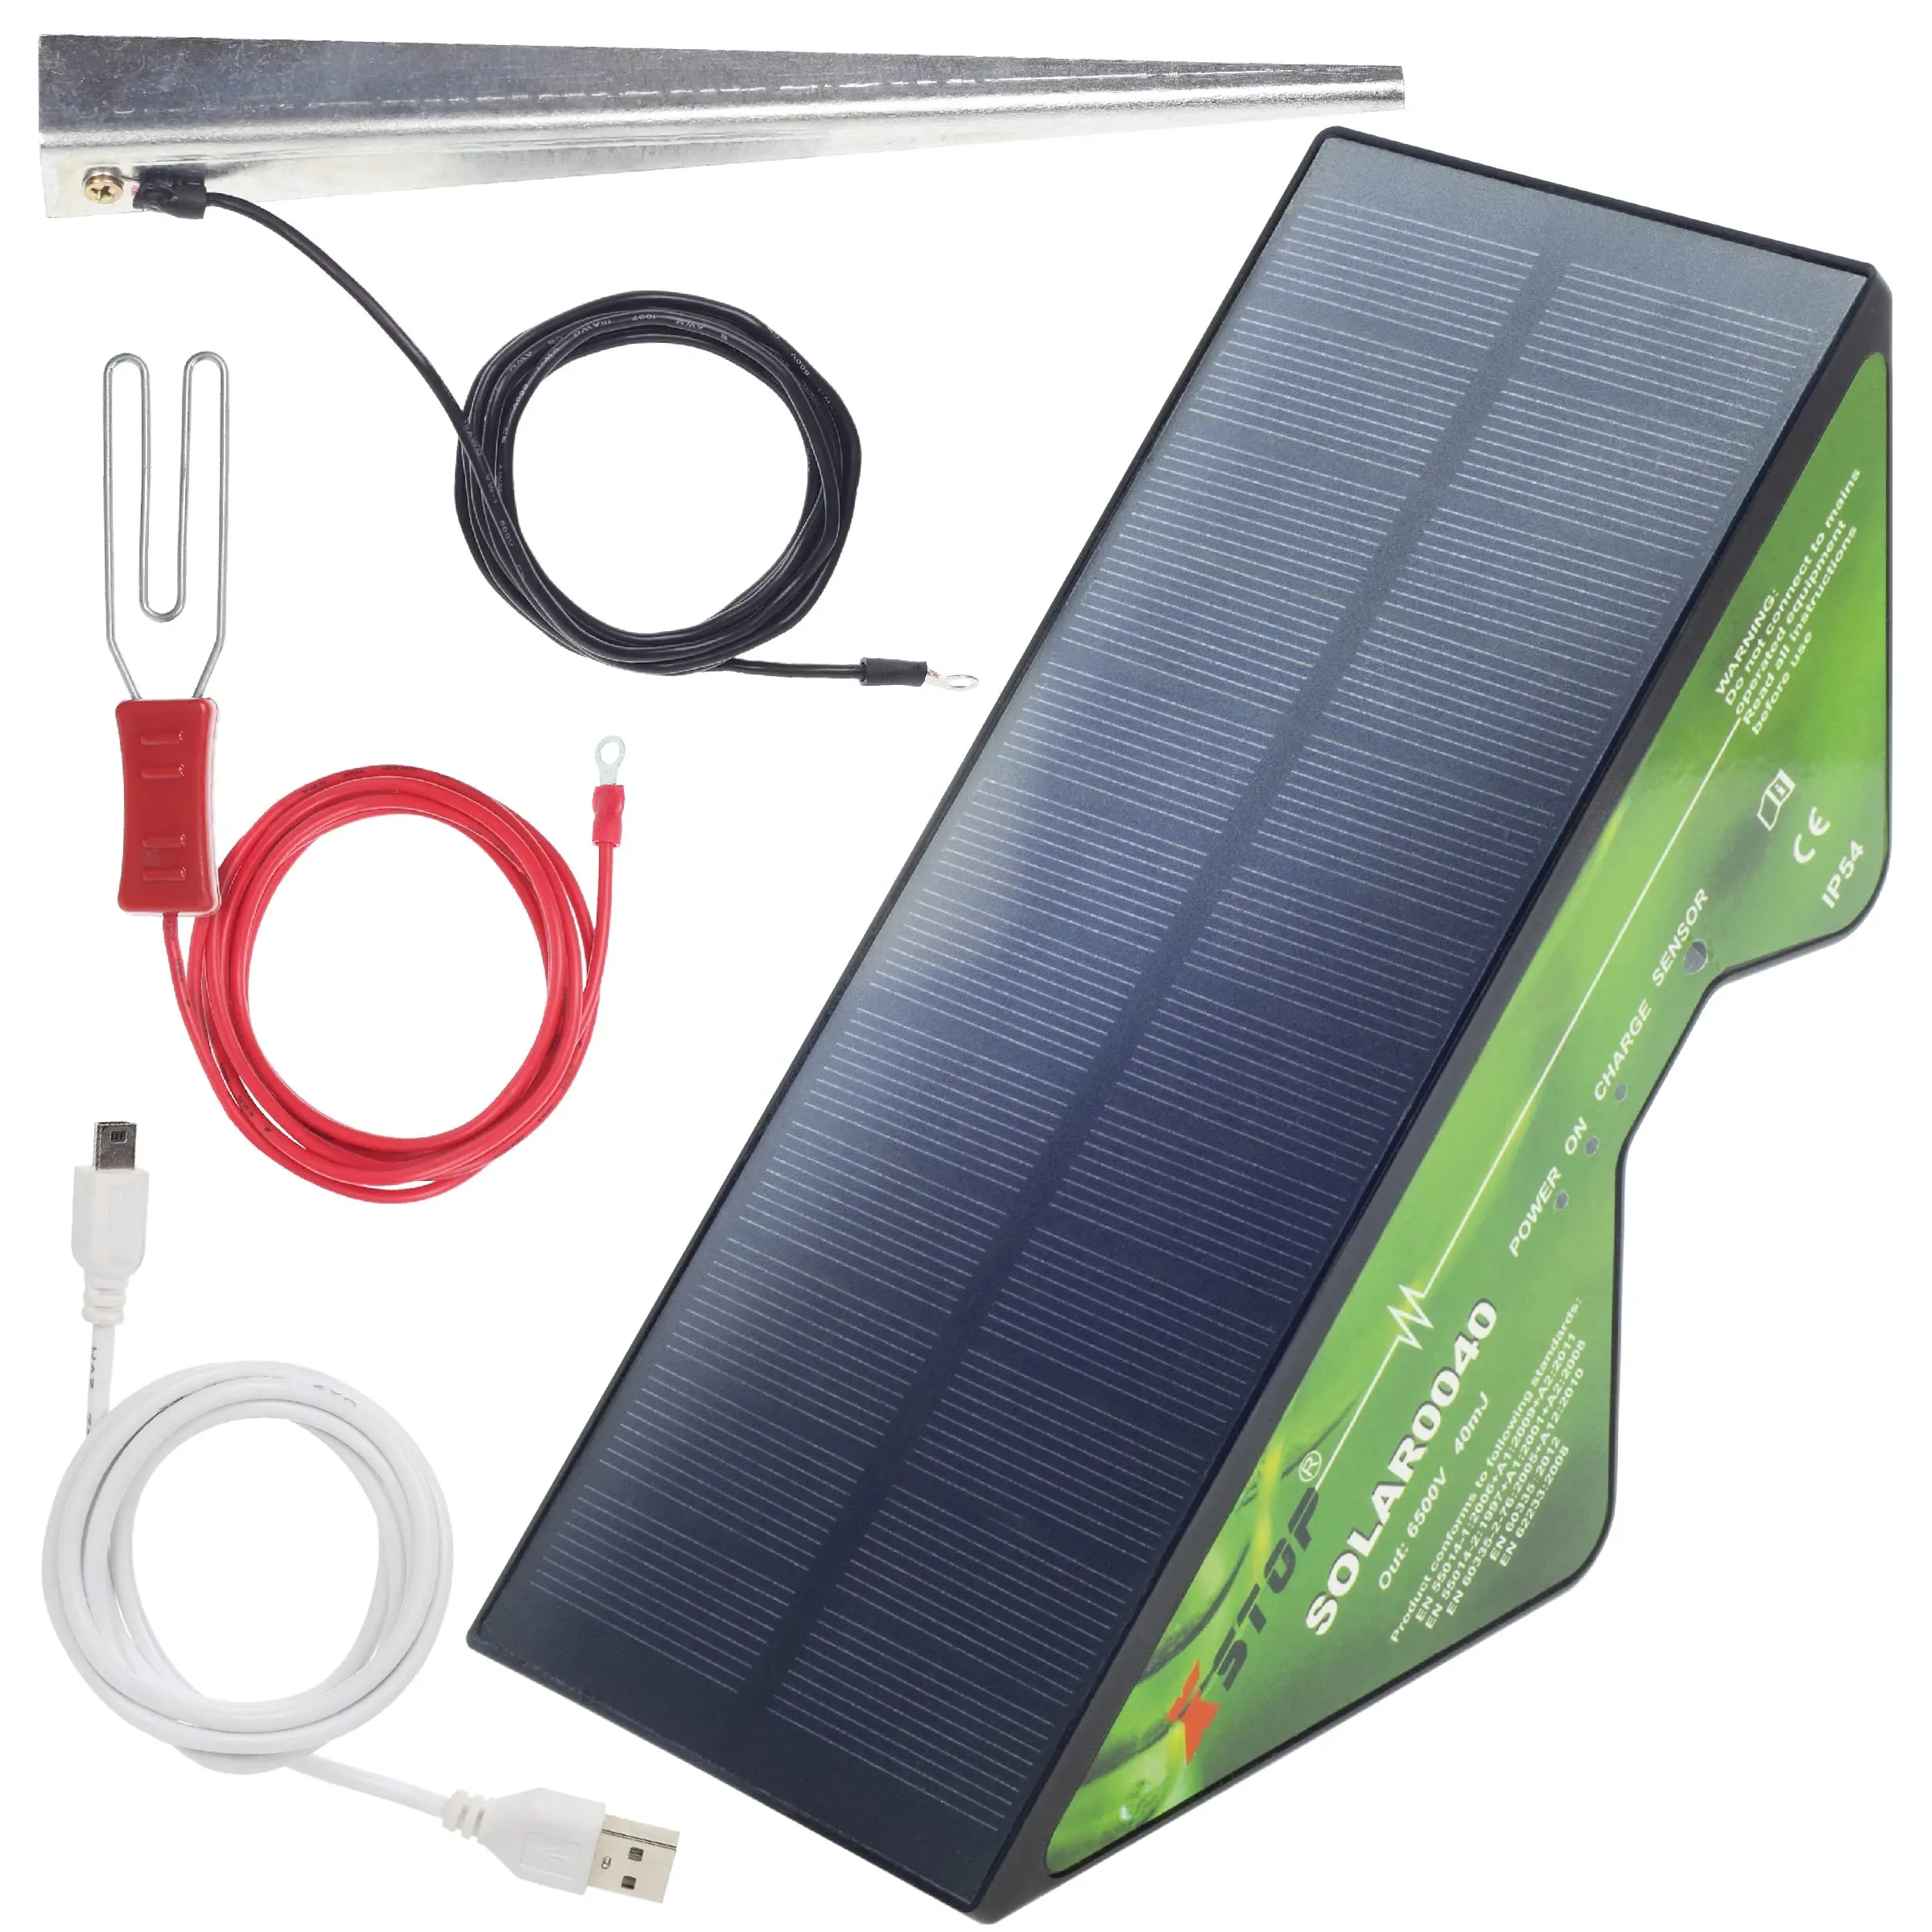 ソーラーパワー電気フェンスエナジャイザーX-Stop2 Kmレンジフルキットには、アースステークとすべてのリードとUSB充電ケーブルが含まれています